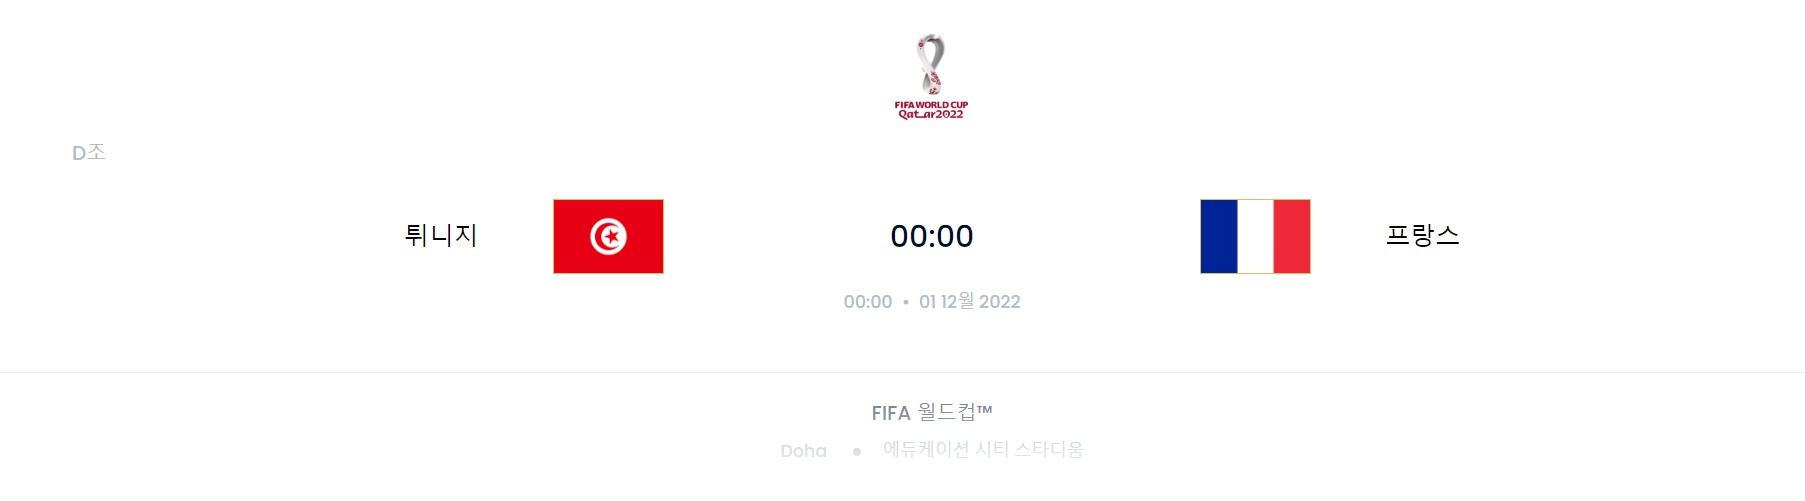 카타르 월드컵 D조 6경기 (호주 VS 덴마크)